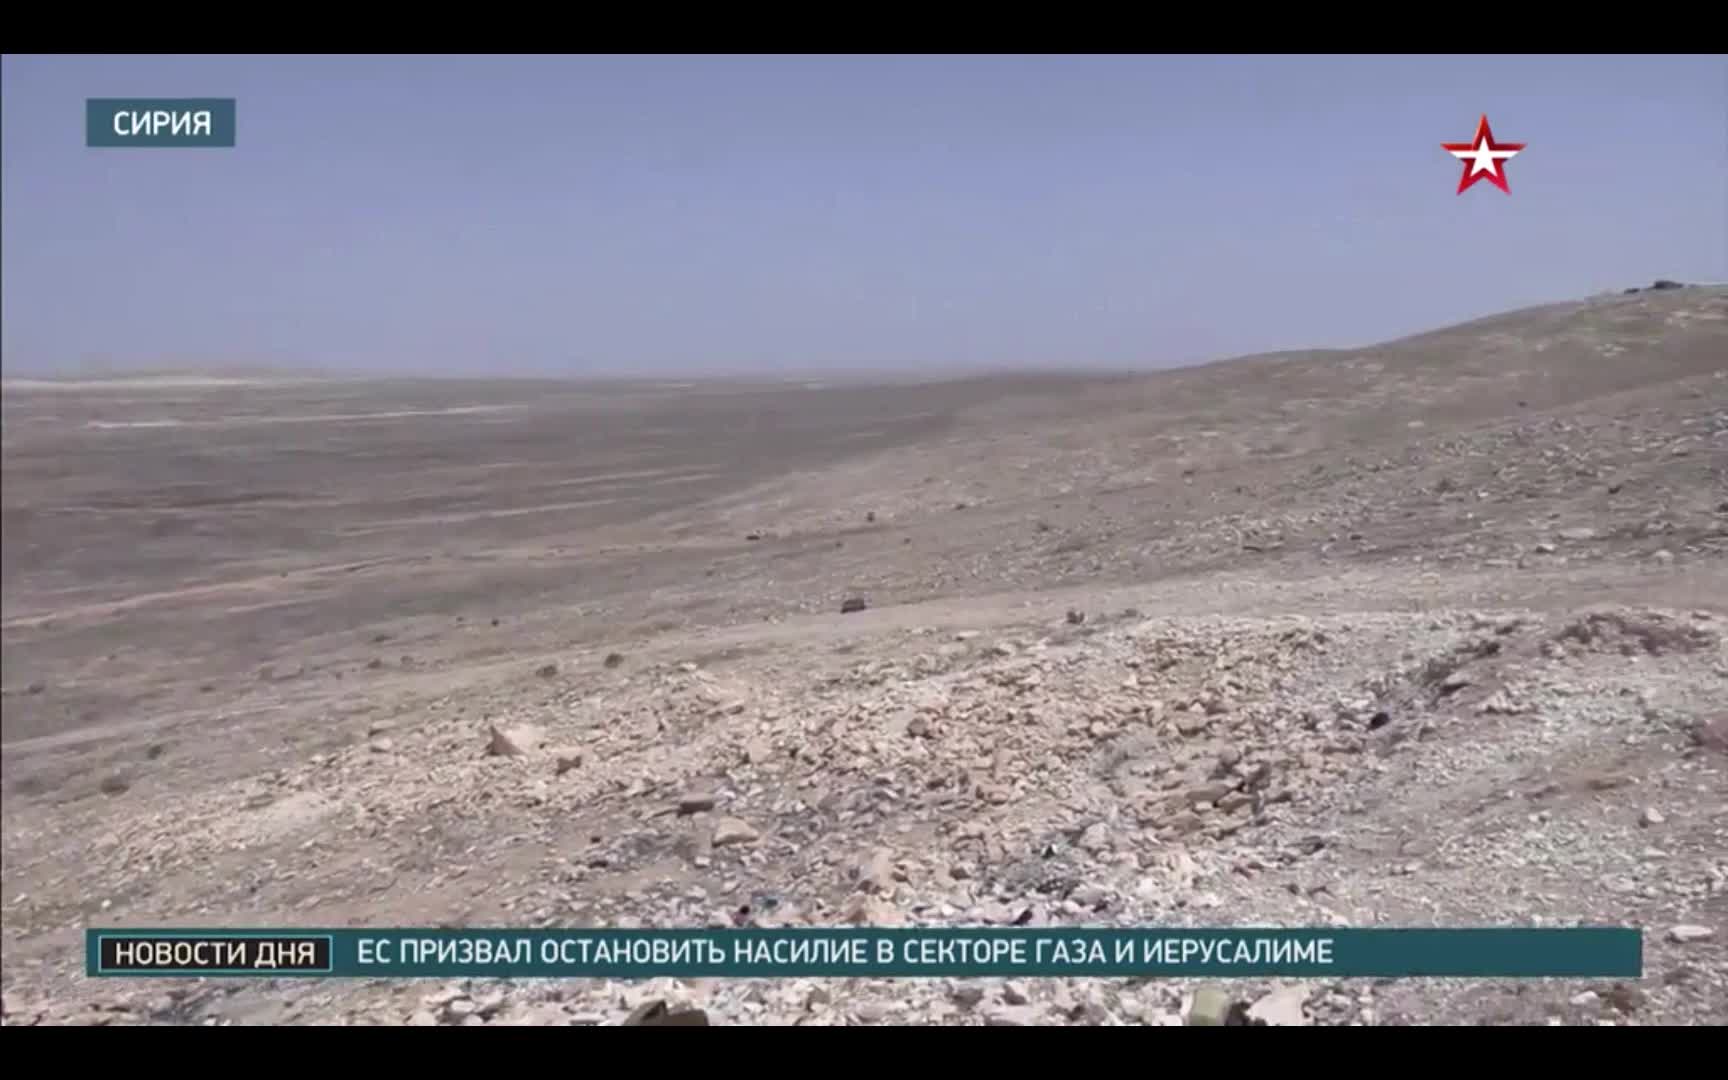 Tiêu điểm - Bên trong căn cứ dưới lòng đất của IS bị Nga phá huỷ bằng 2,5 tấn thuốc nổ